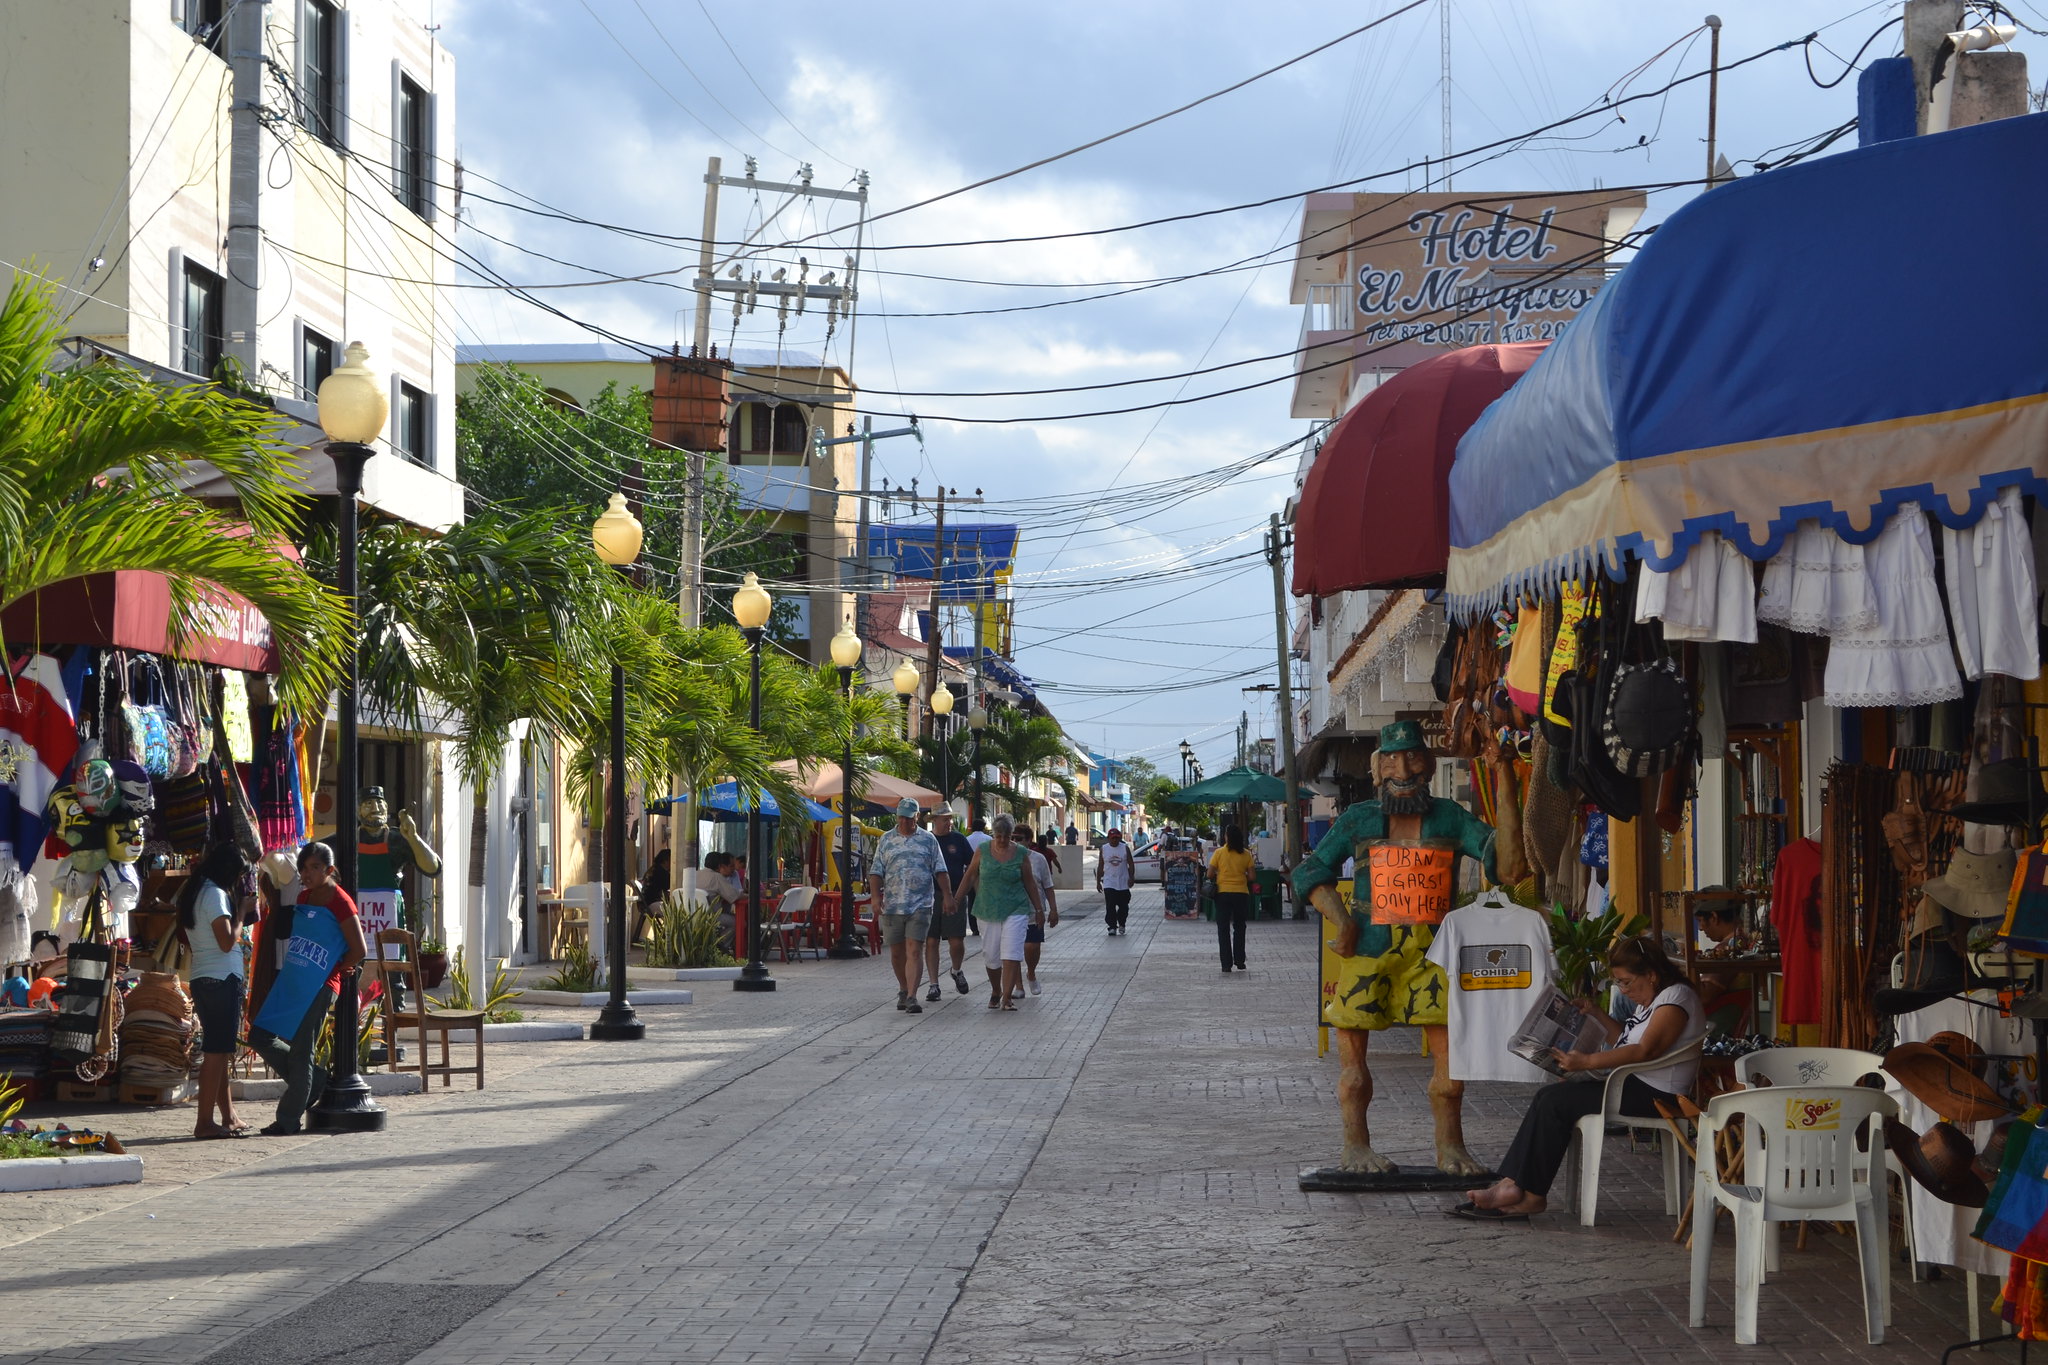 Downtown Cozumel